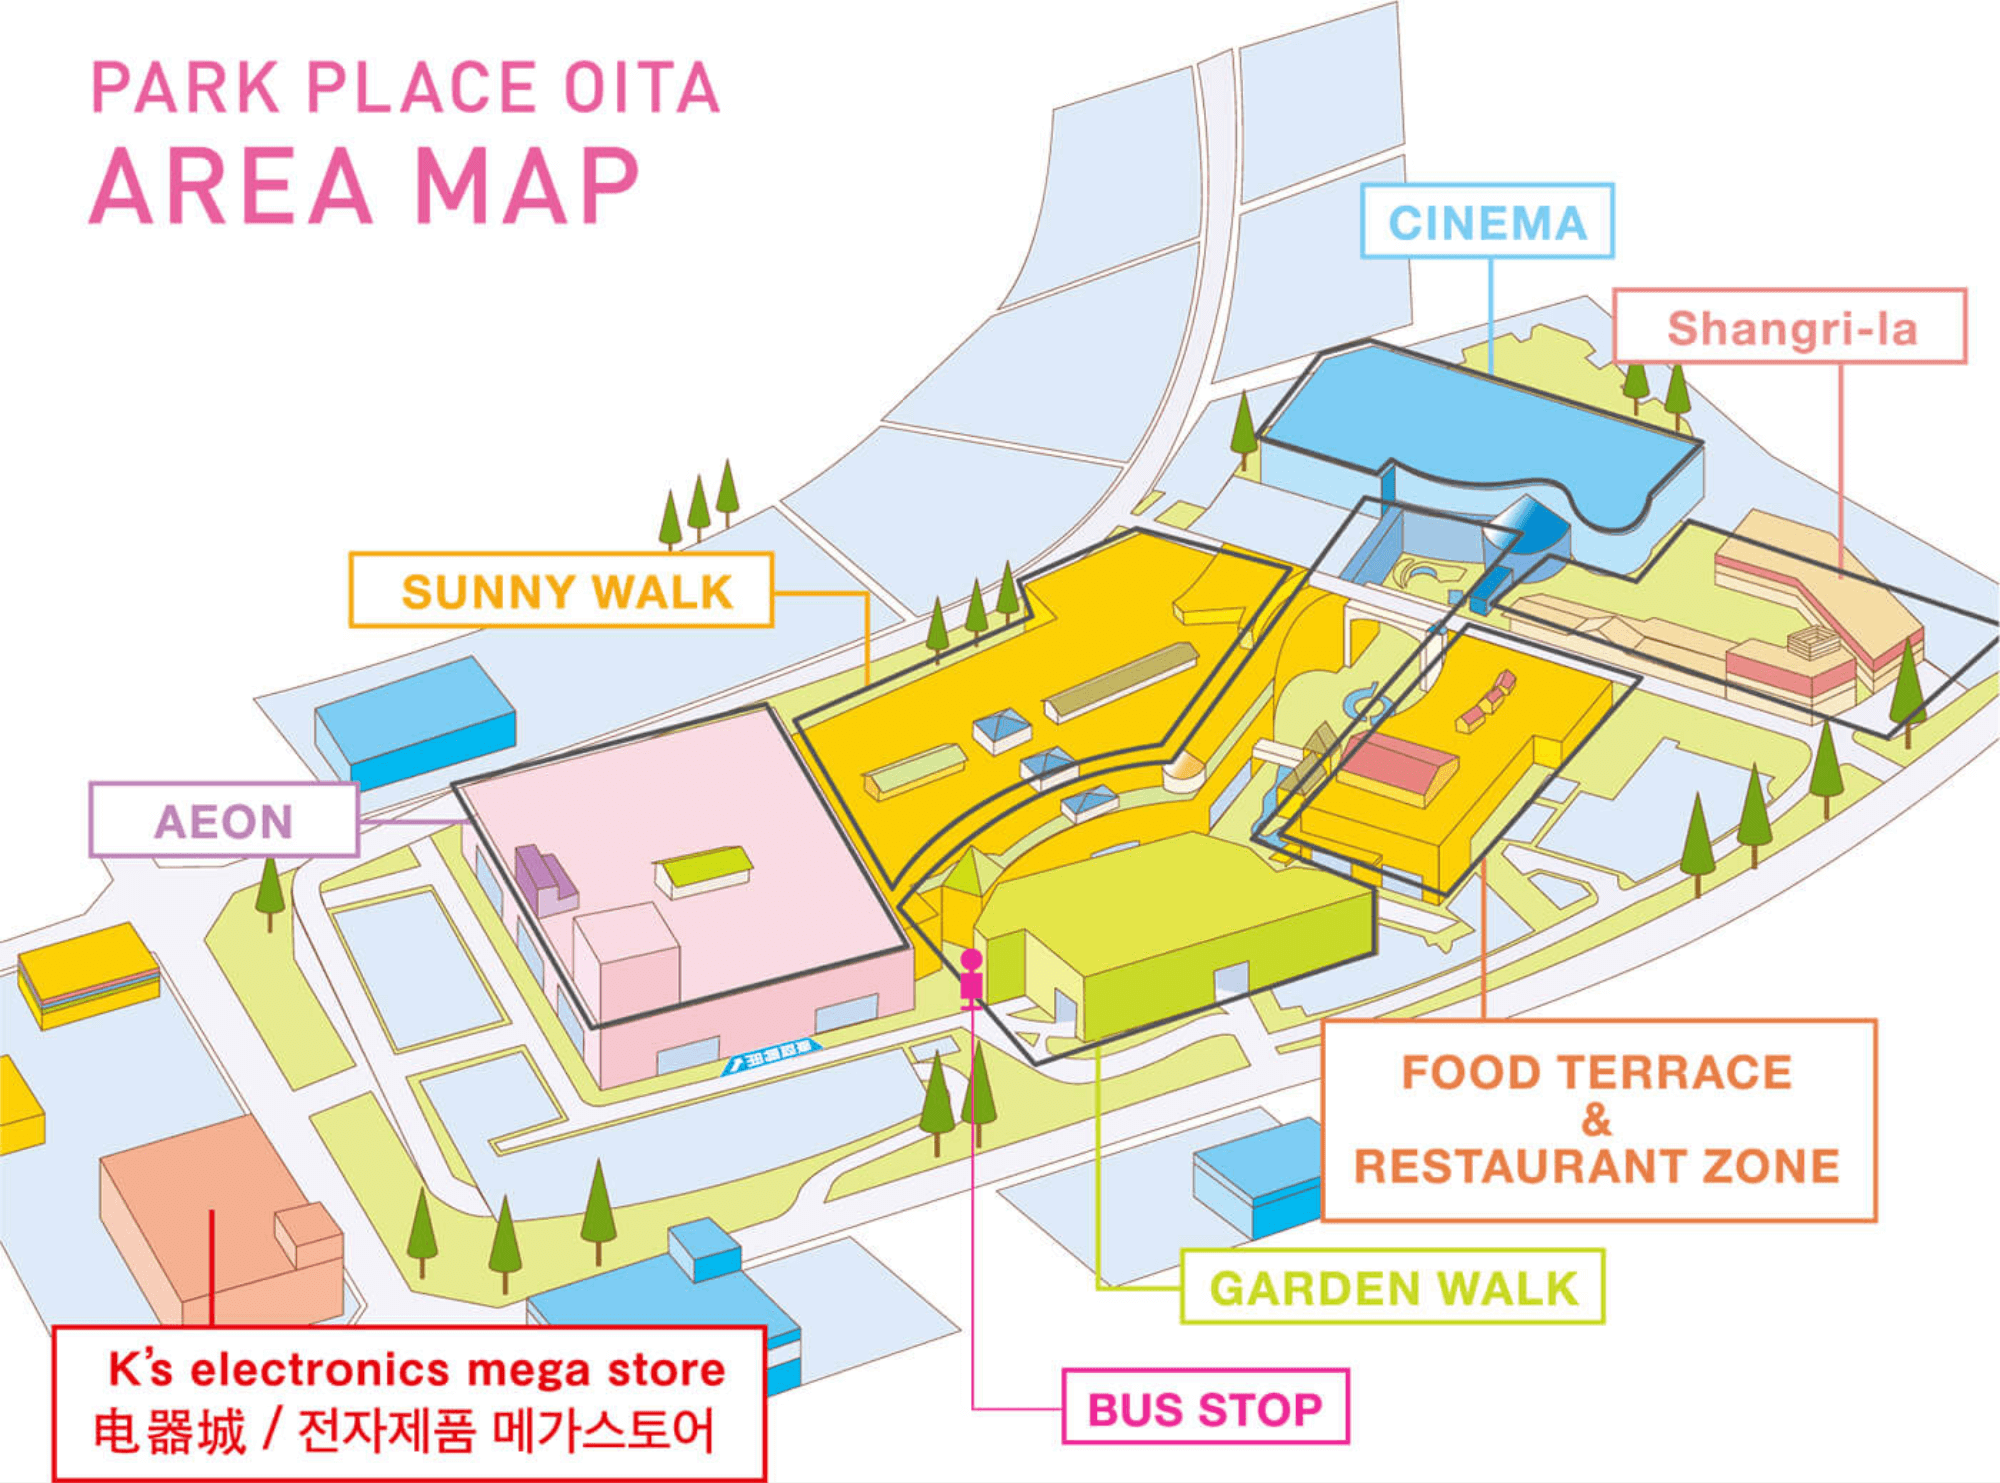 PARK PLACE OITA AREA MAP